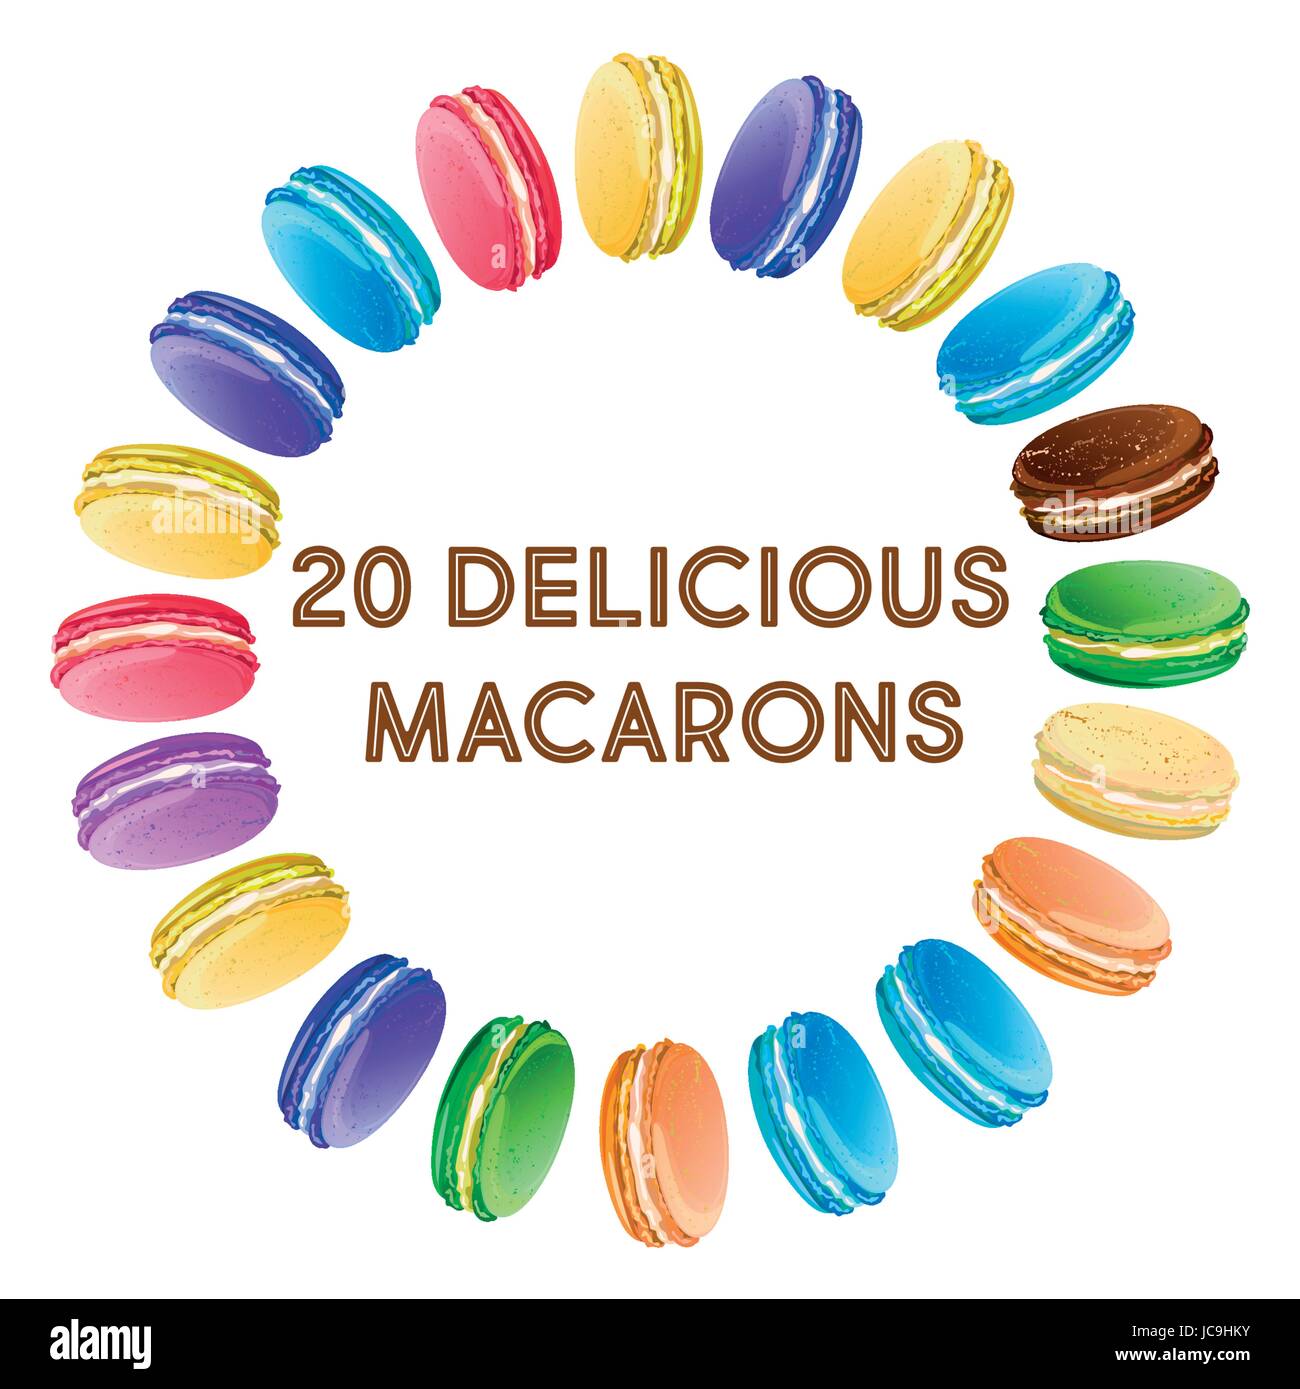 Macaron macarons macarons saveur goût cookie style inscription divers types cercle autour. Gros plan sur le côté vertical vecteur signe magnifique illustra Illustration de Vecteur